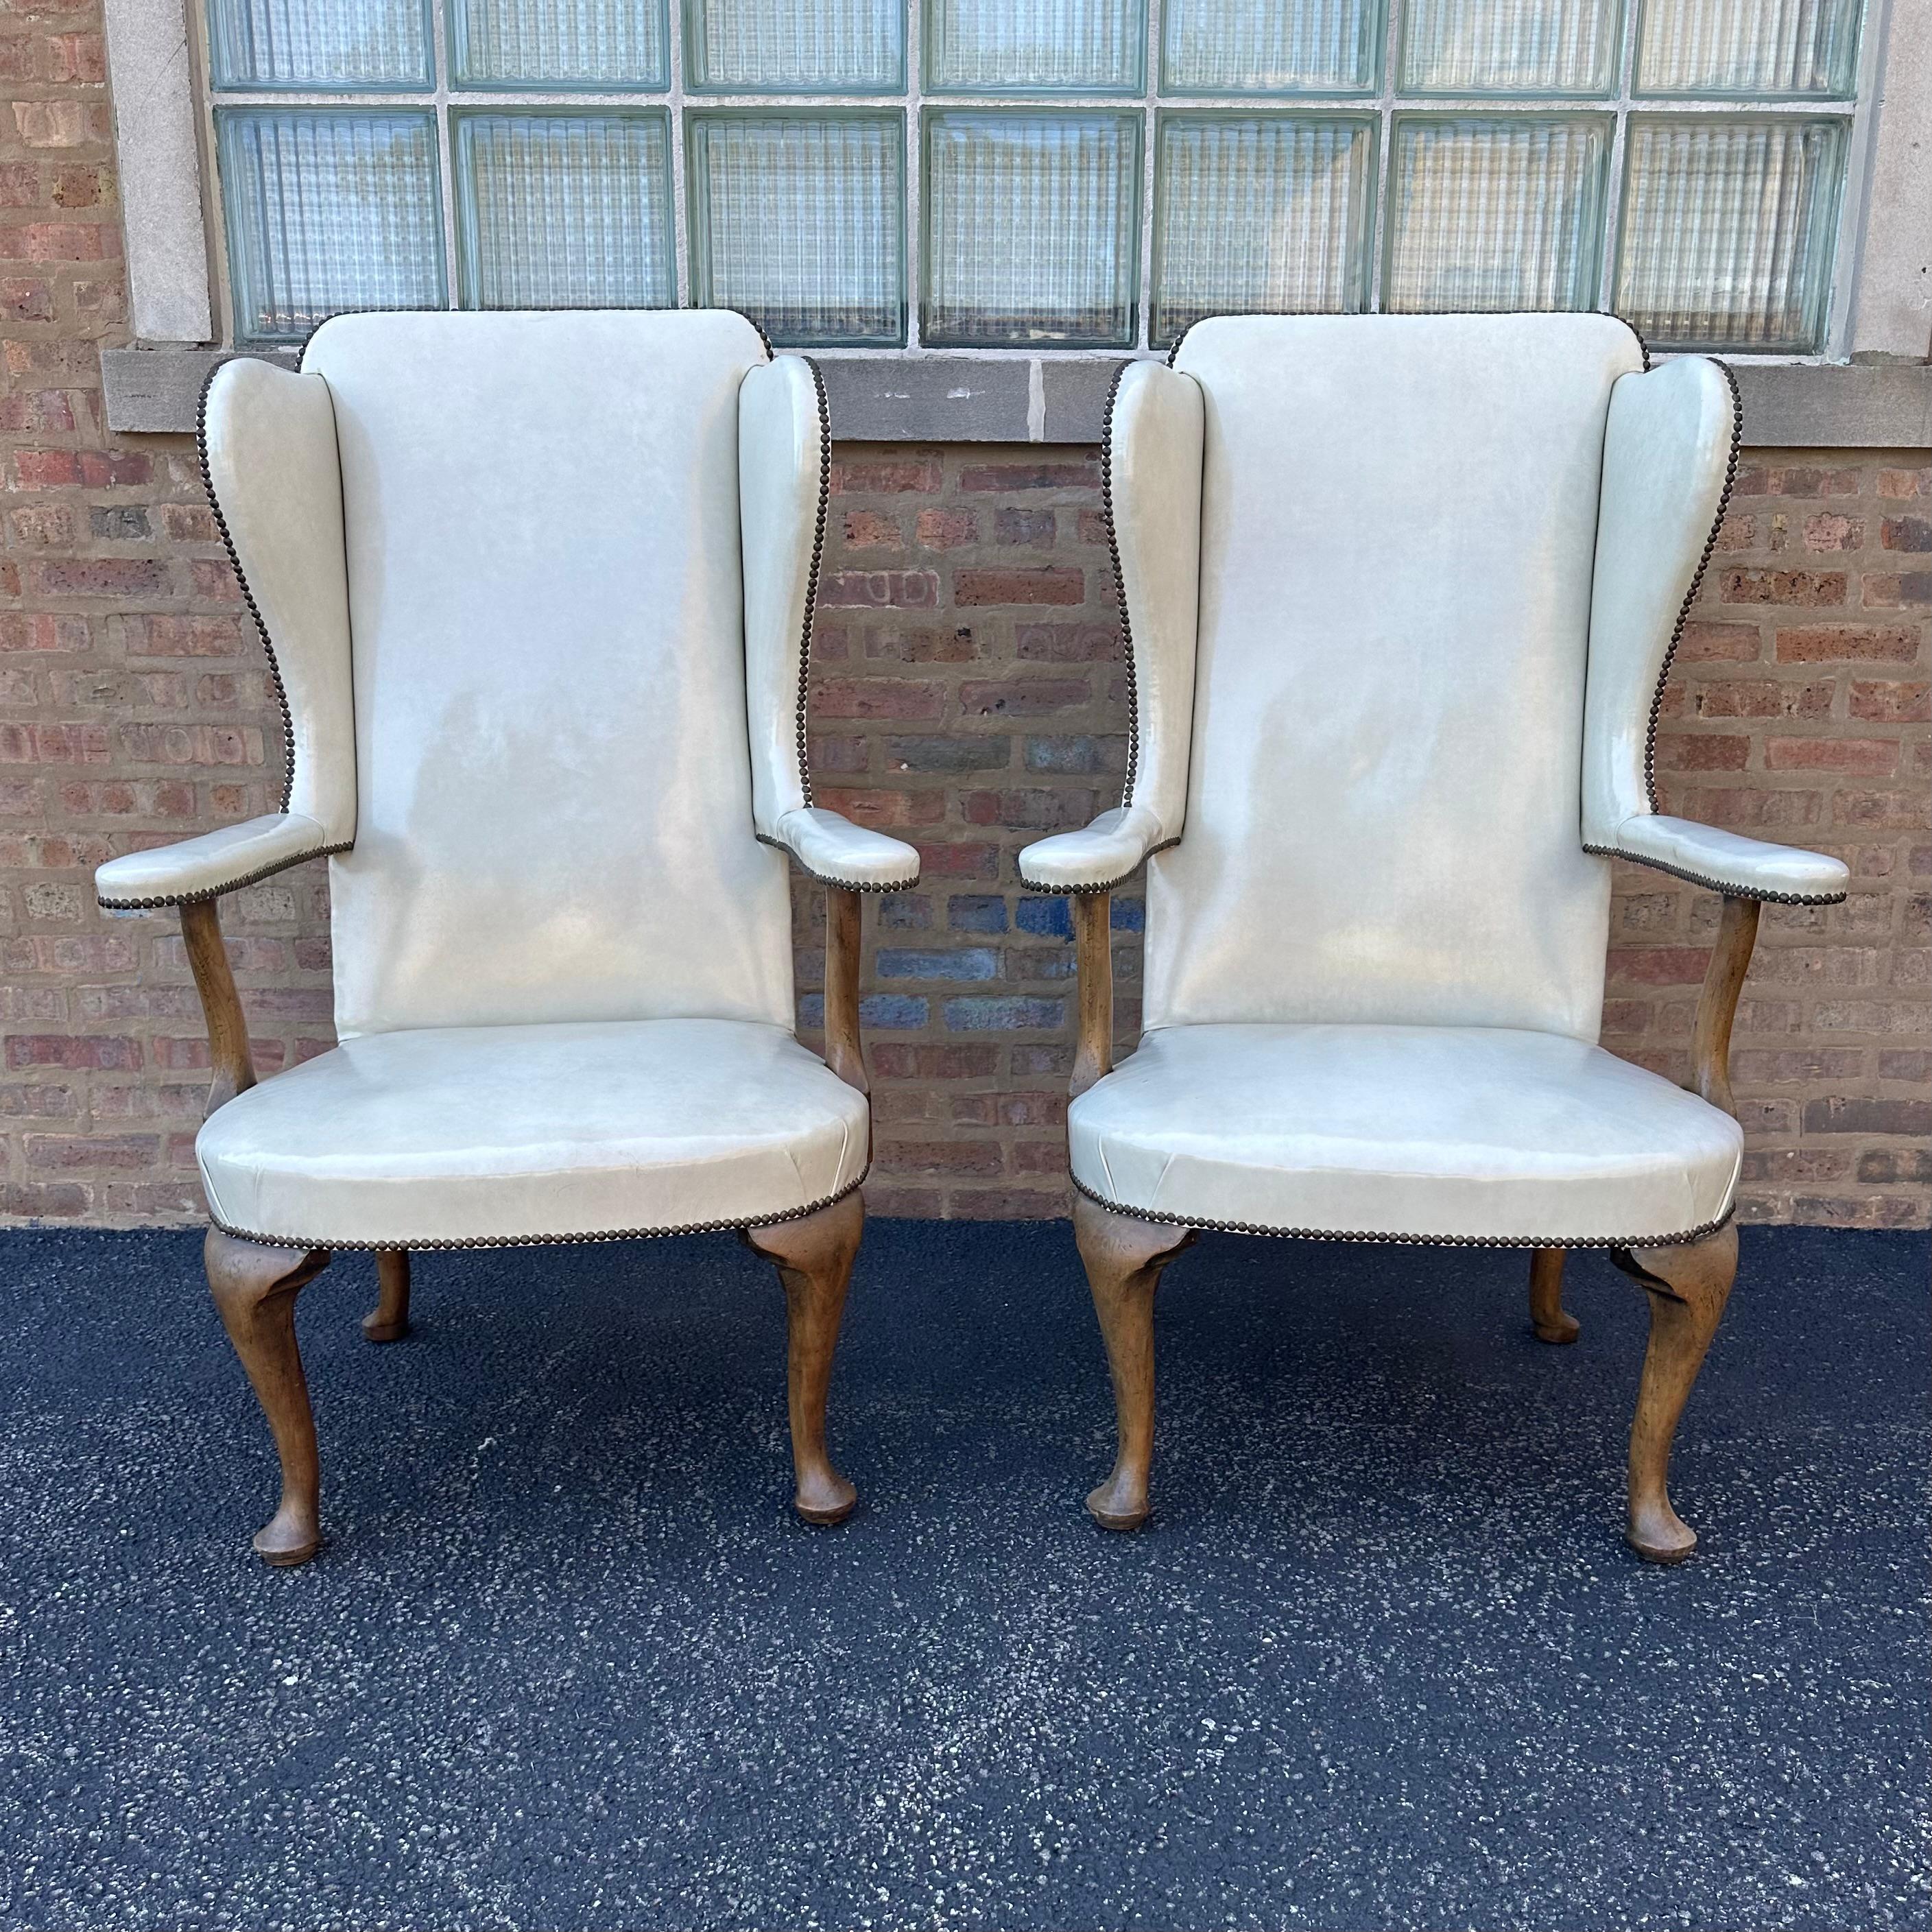 Cette fabuleuse paire de chaises à dossier haut de style provincial français a été conçue par le célèbre architecte d'intérieur Richard Himmel, de Chicago, et produite en 1970. Les chaises à haut dossier sont revêtues du cuir crème brillant